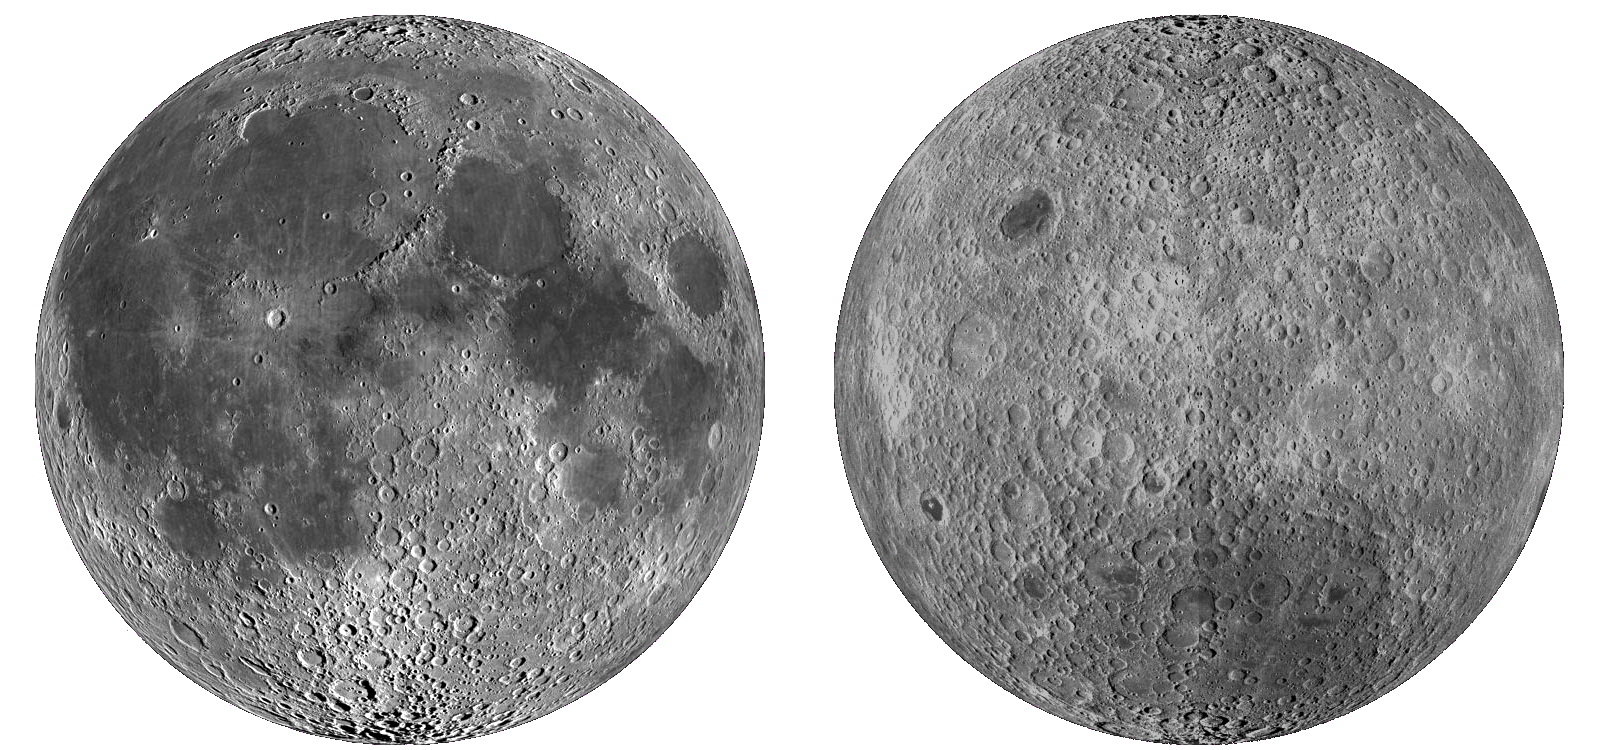 月球正面和背面的照片图片